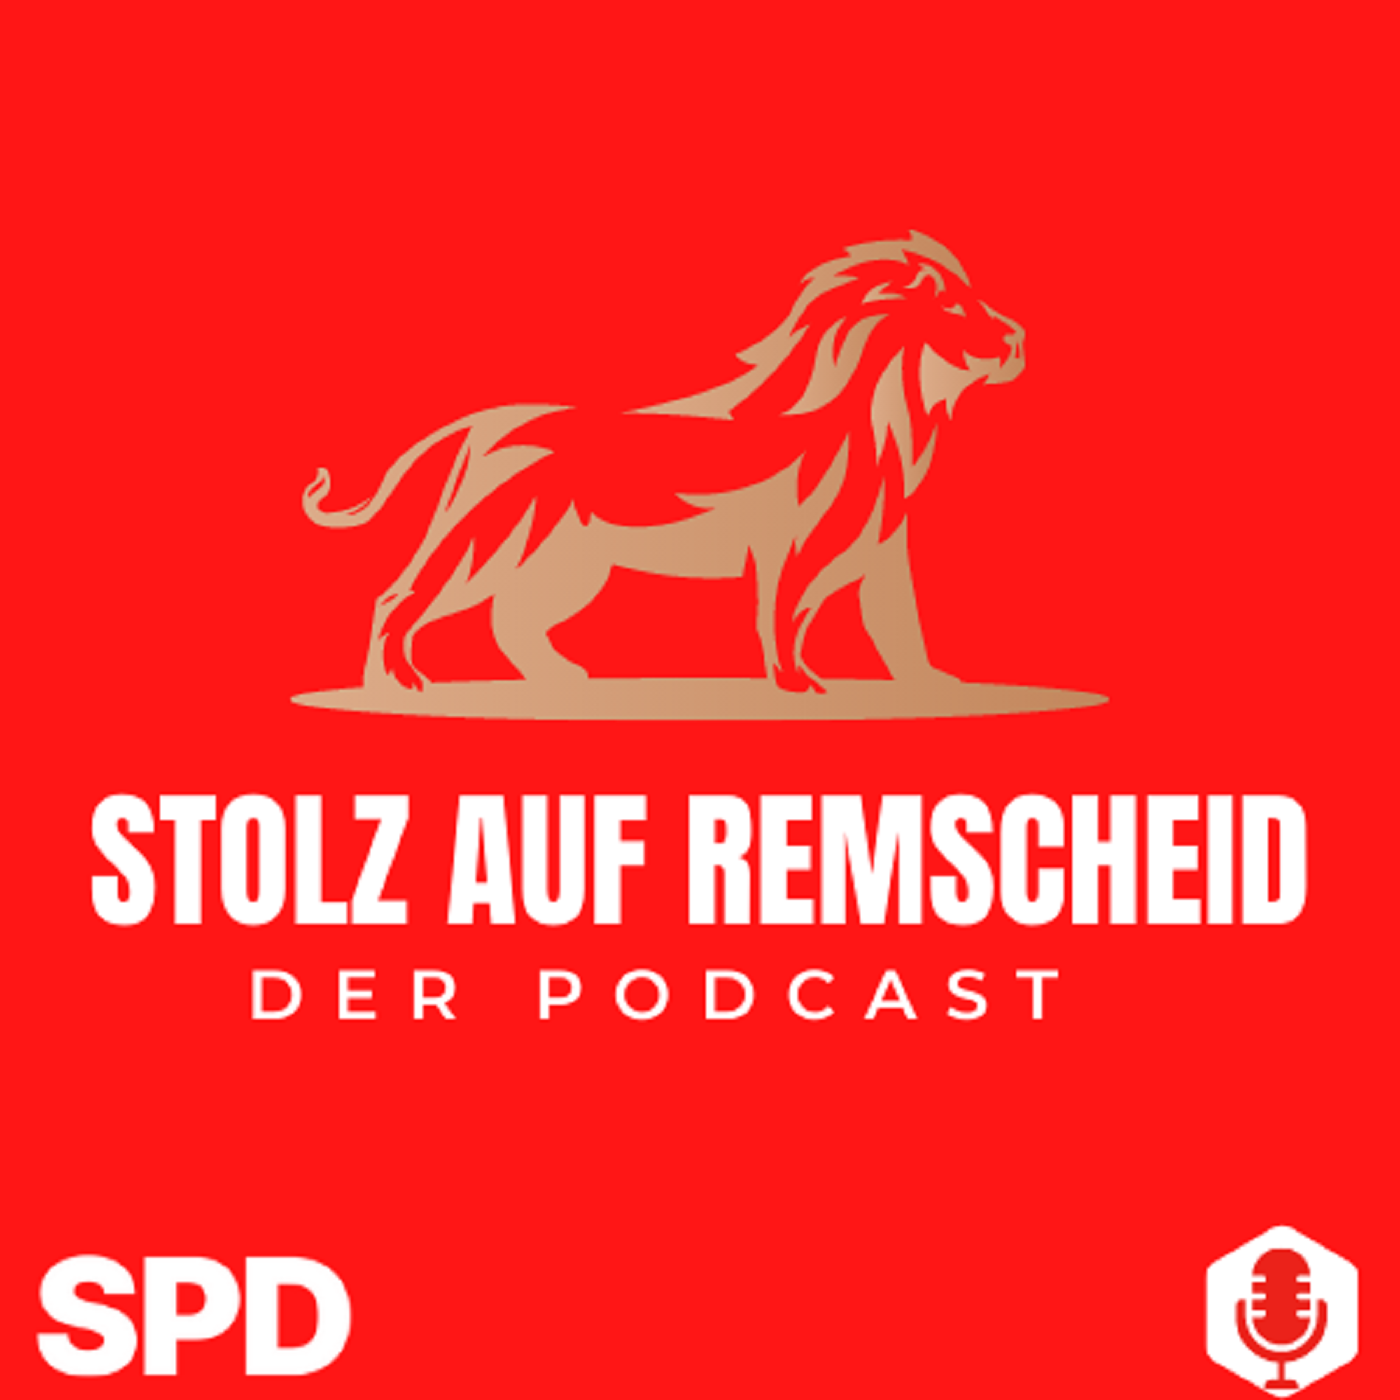 Stolz auf Remscheid - Der Podcast der SPD-Ratsfraktion